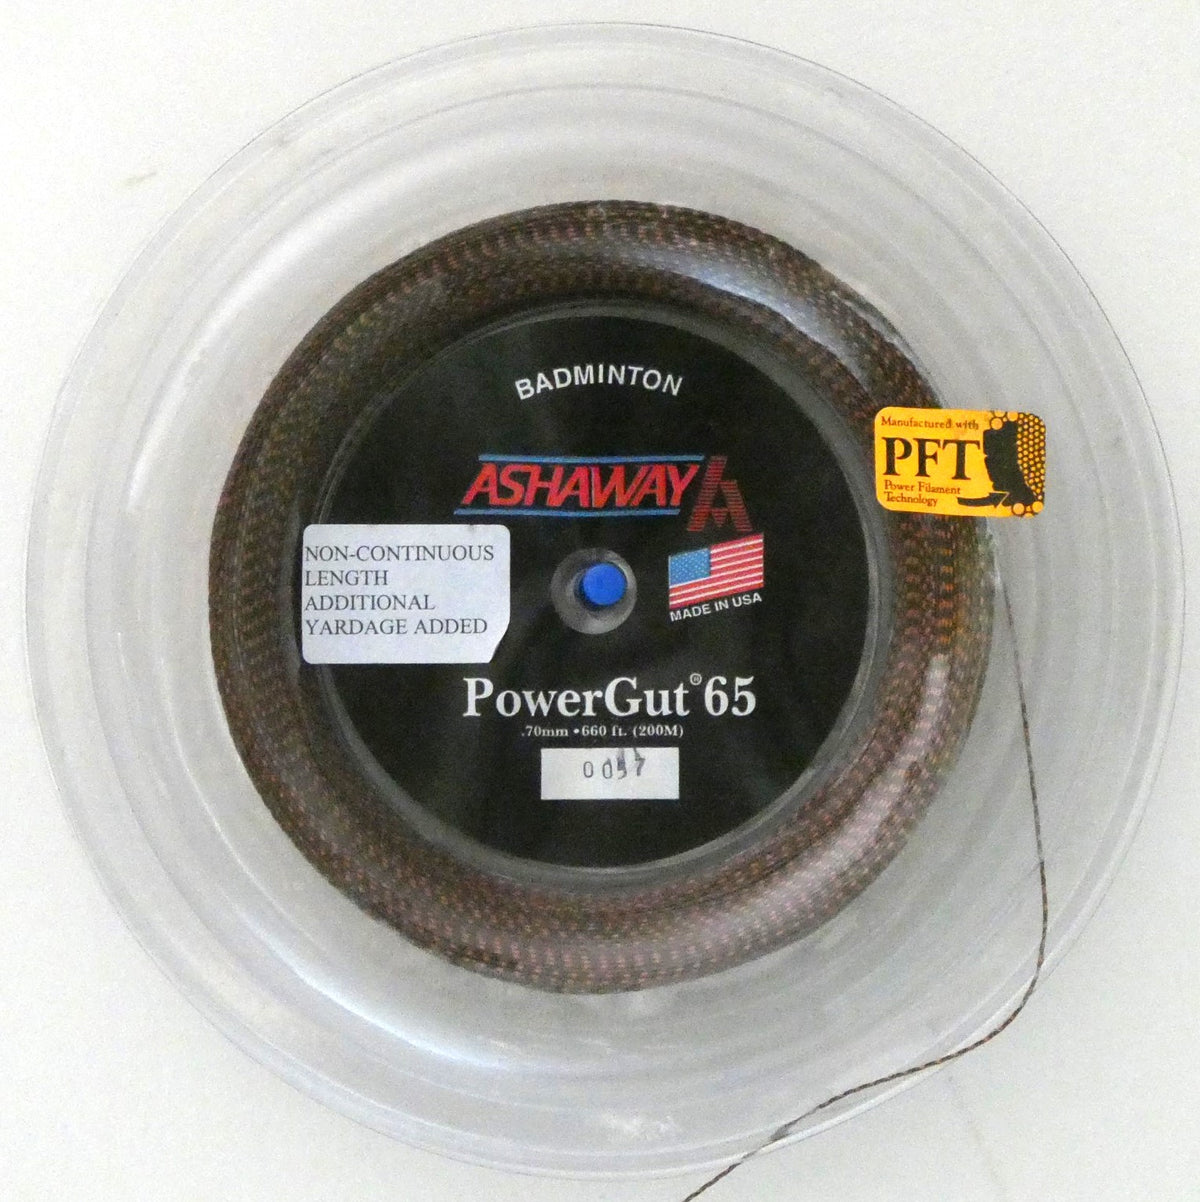 Ashaway PowerGut 65 Badminton String, Brown with orange spiral, 200 M REEL